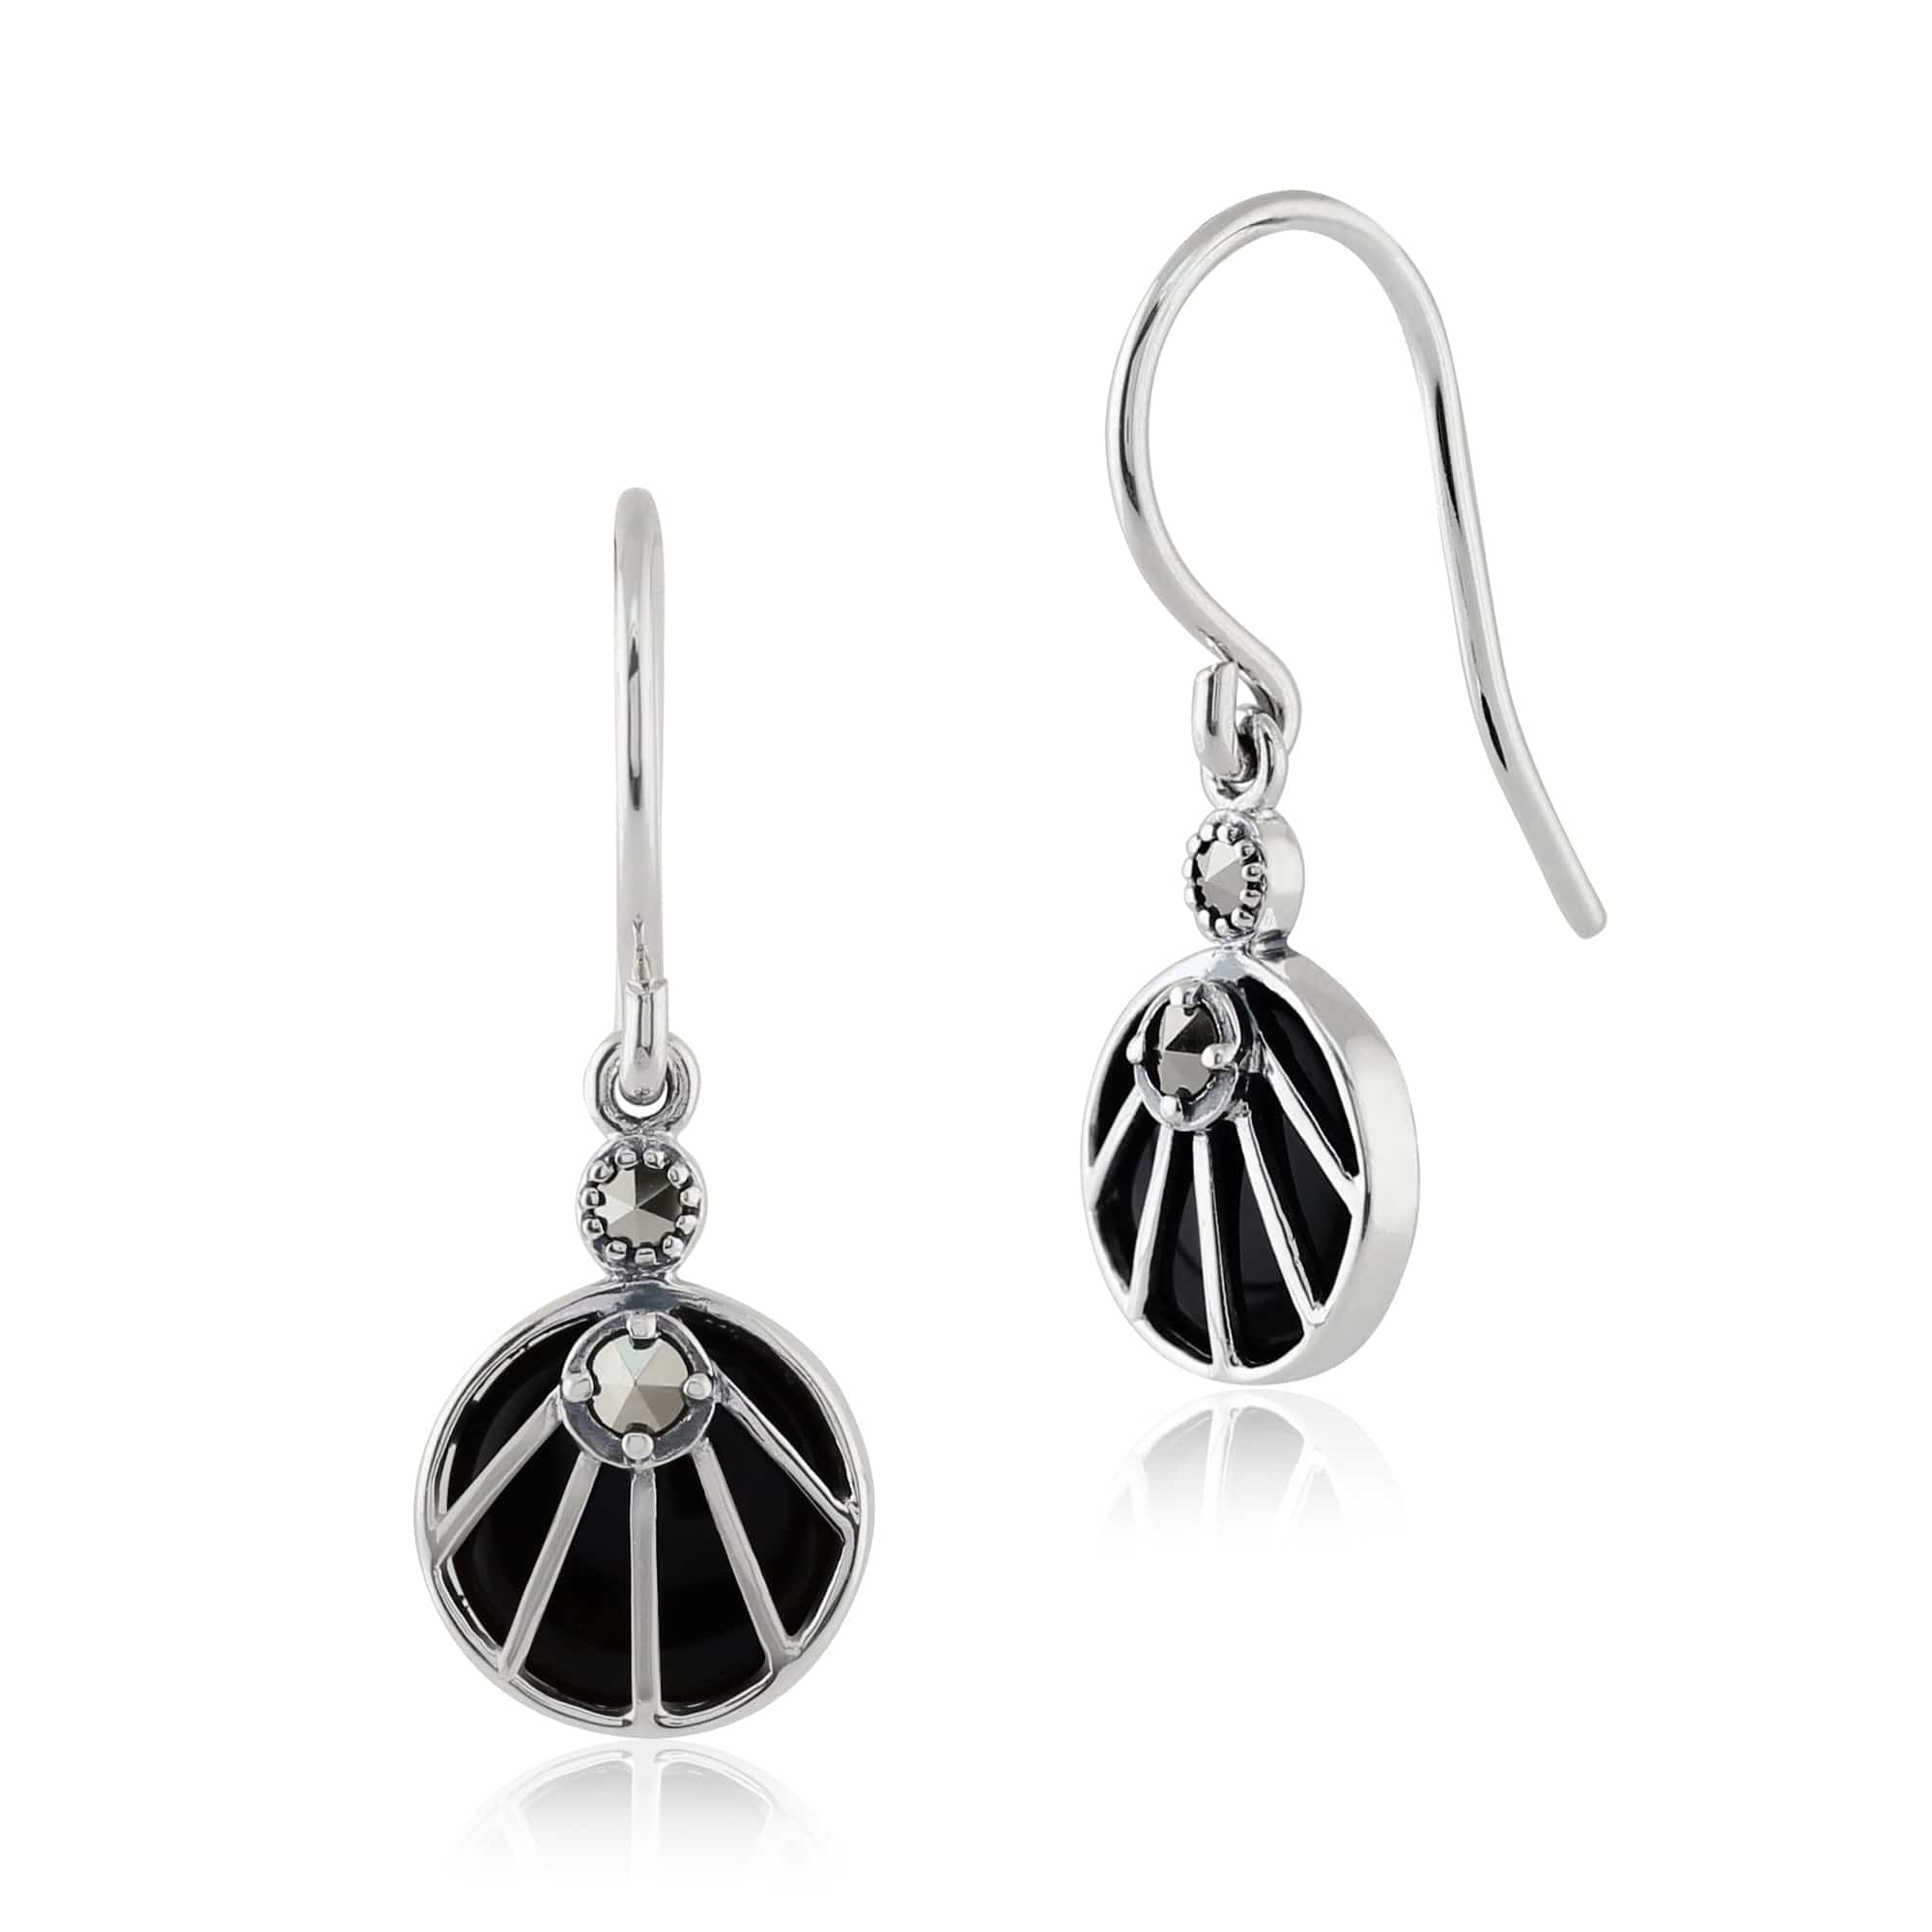 Art Deco Style Black Onyx Cabochon & Marcasite Drop Earrings in 925 Sterling Silver - Gemondo